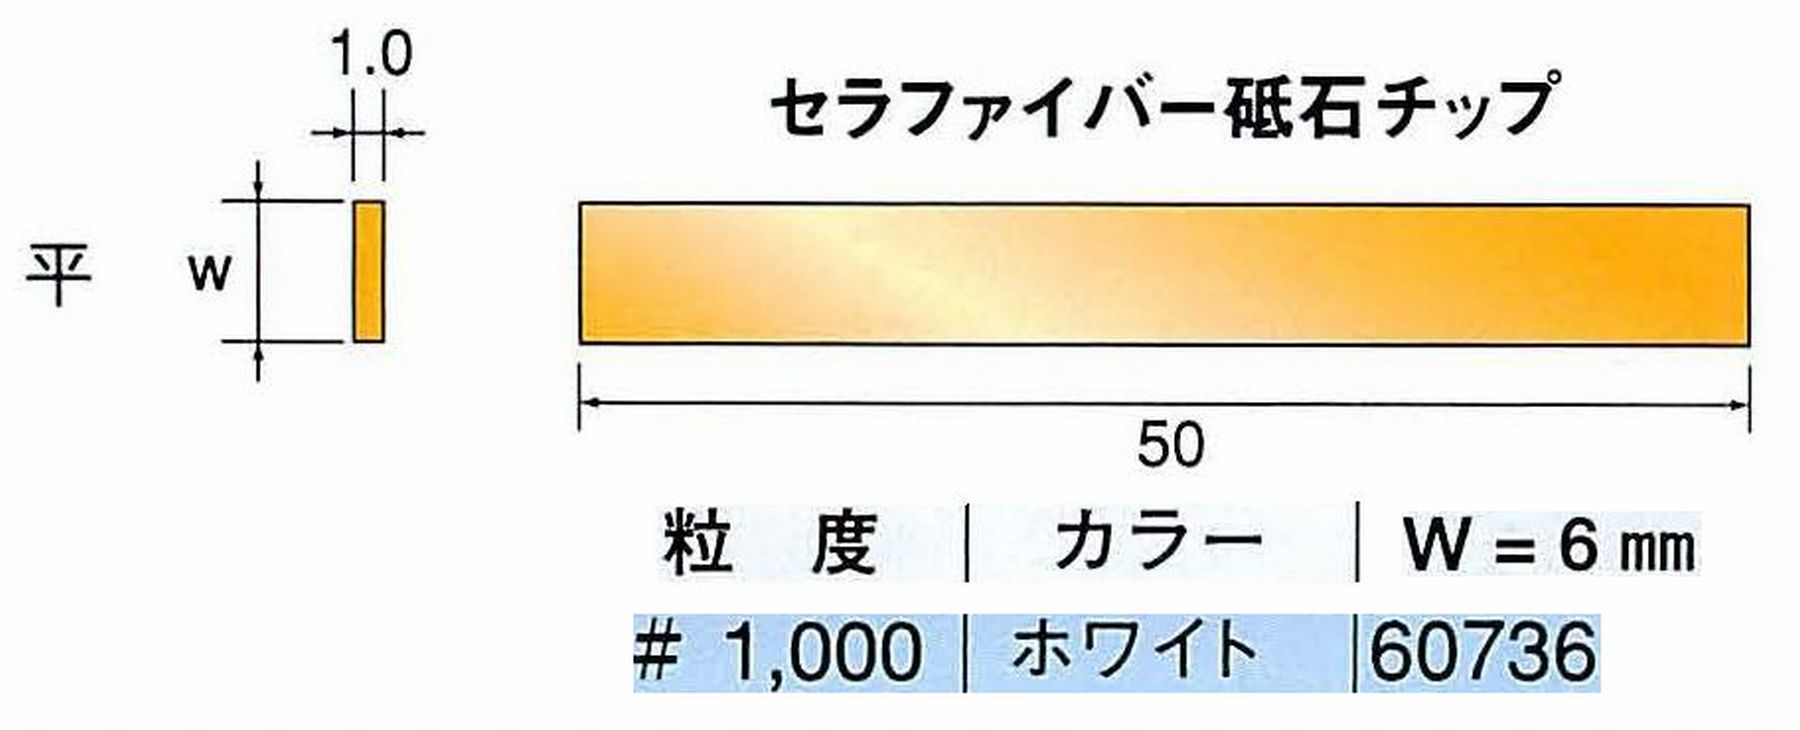 ナカニシ/NAKANISHI 超音波研磨装置 シーナスneo/シーナス専用工具 セラファイバー砥石チップ 平 60736